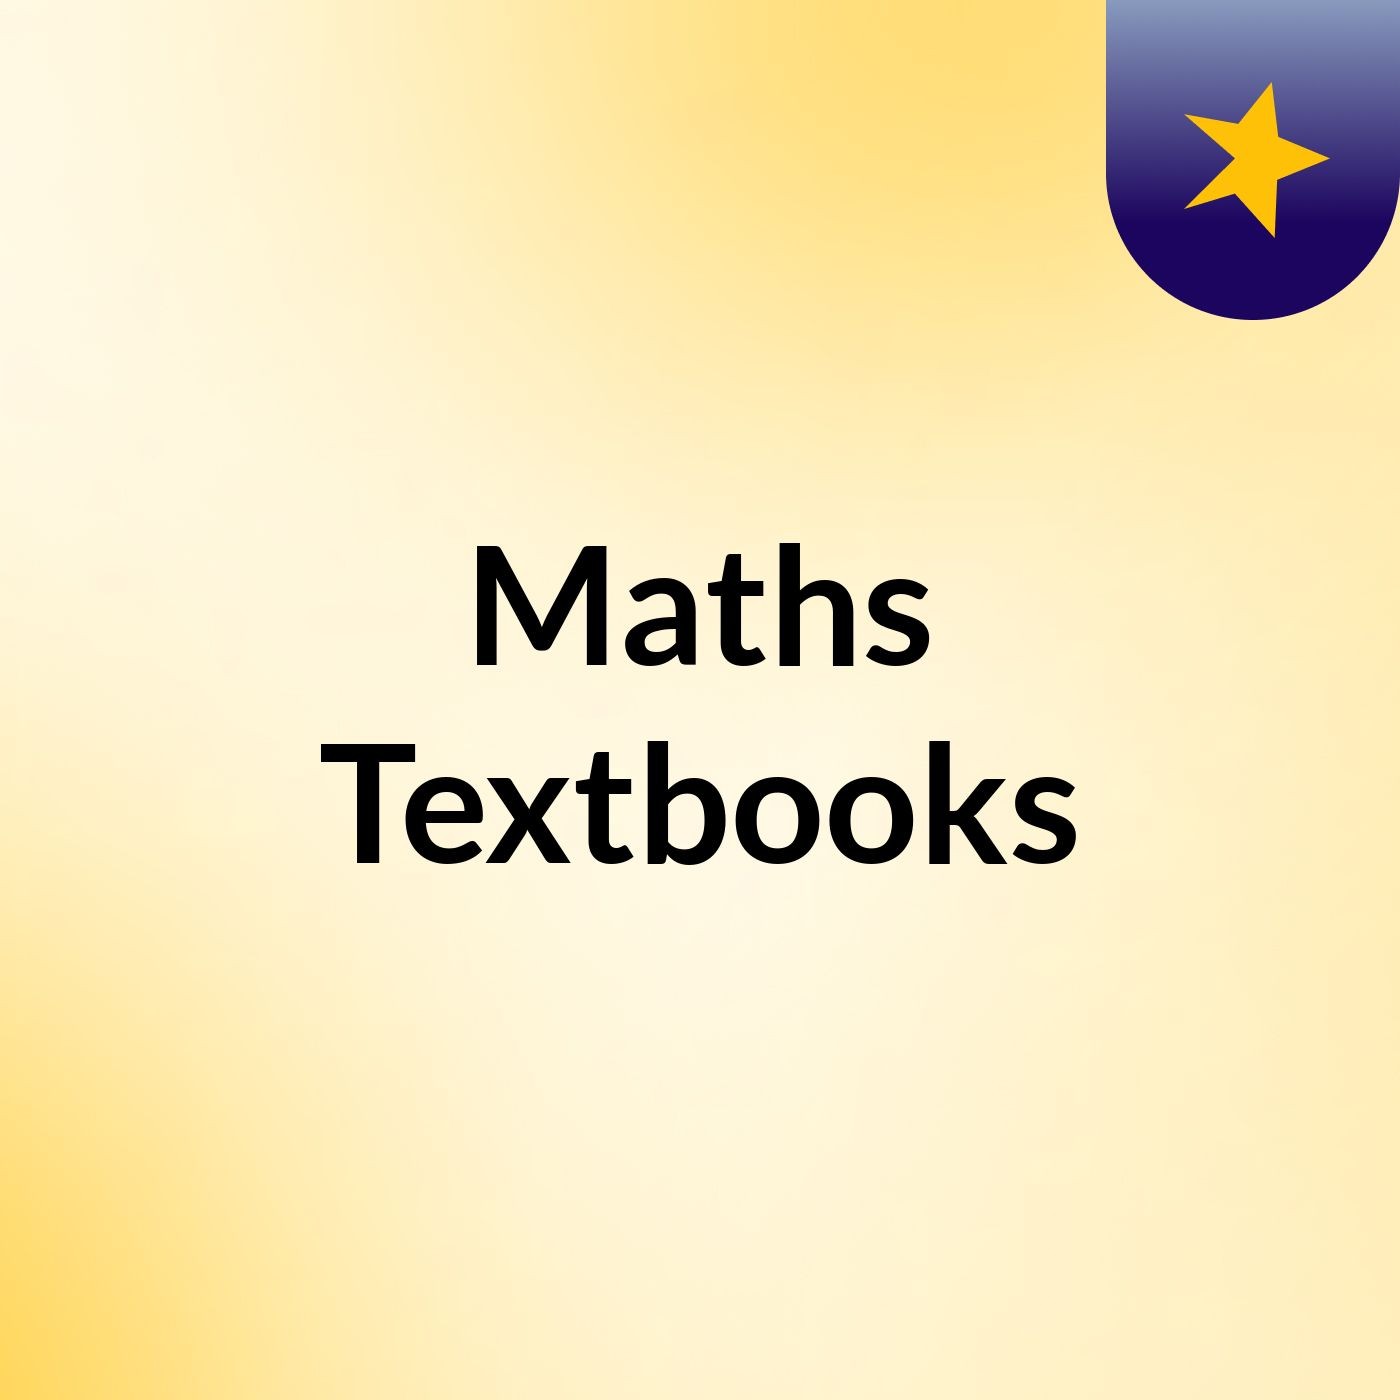 Maths Textbooks